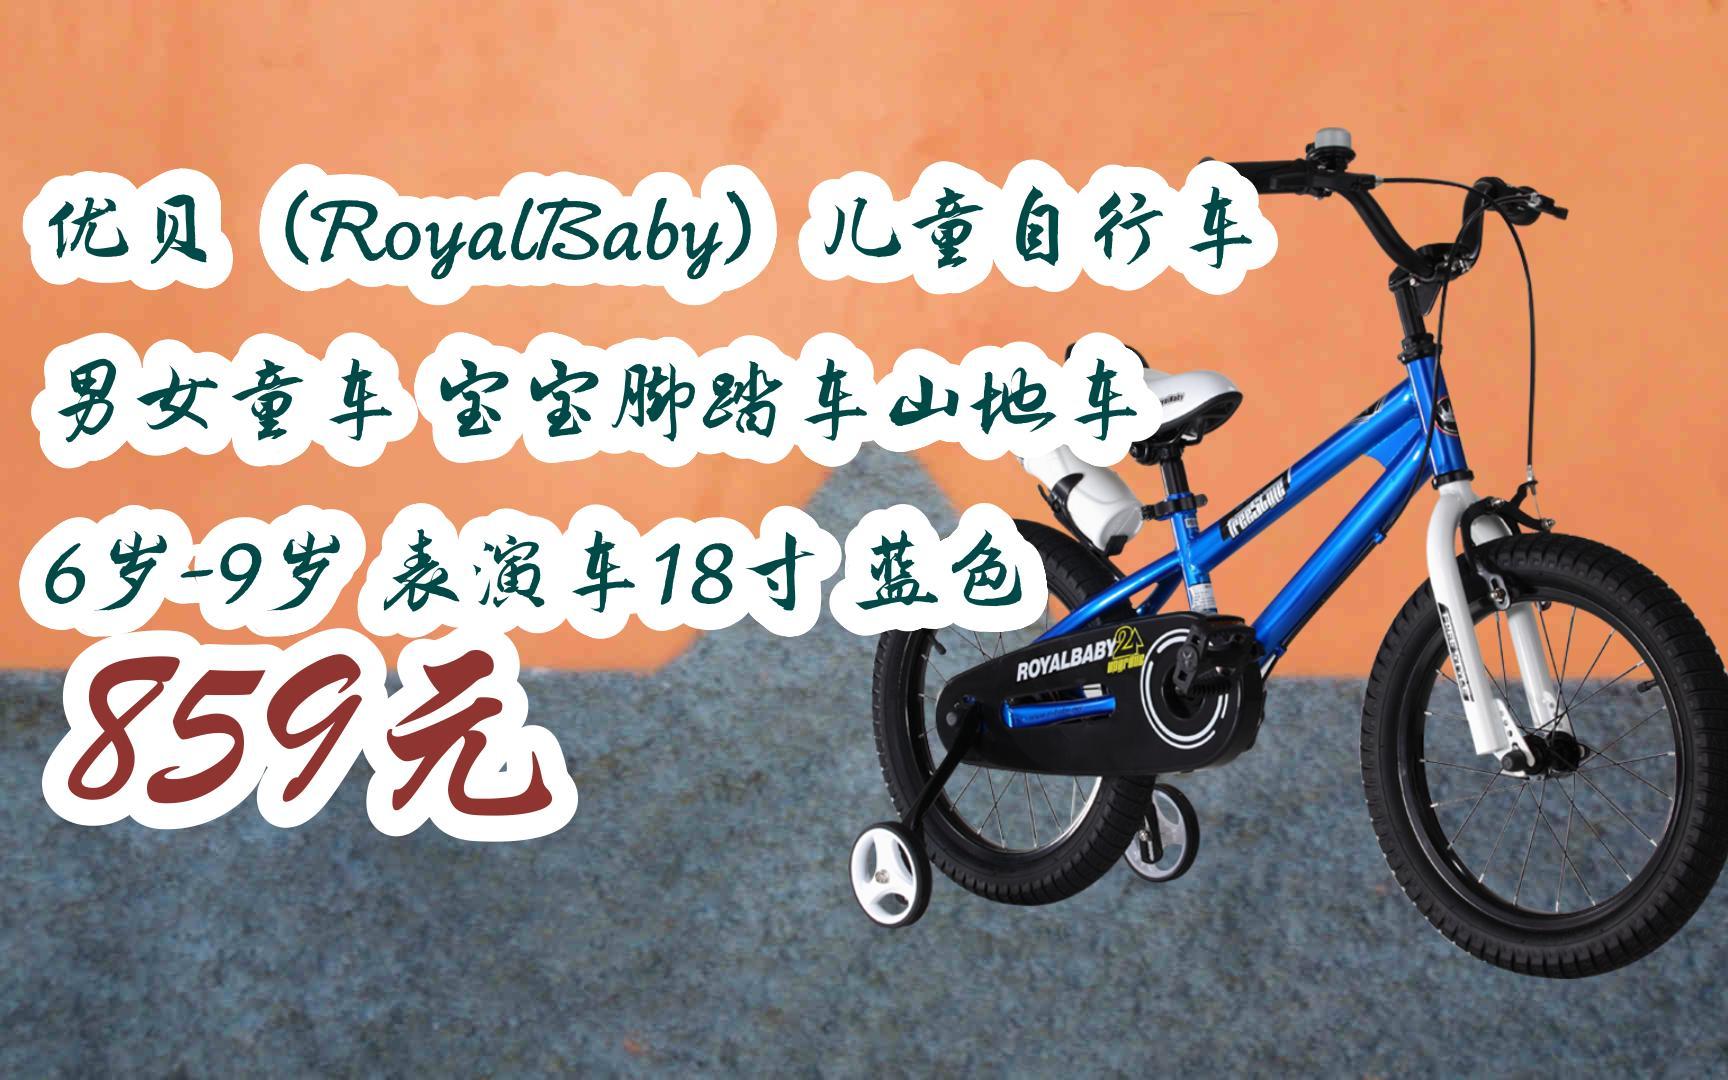 优贝儿童自行车logo图片